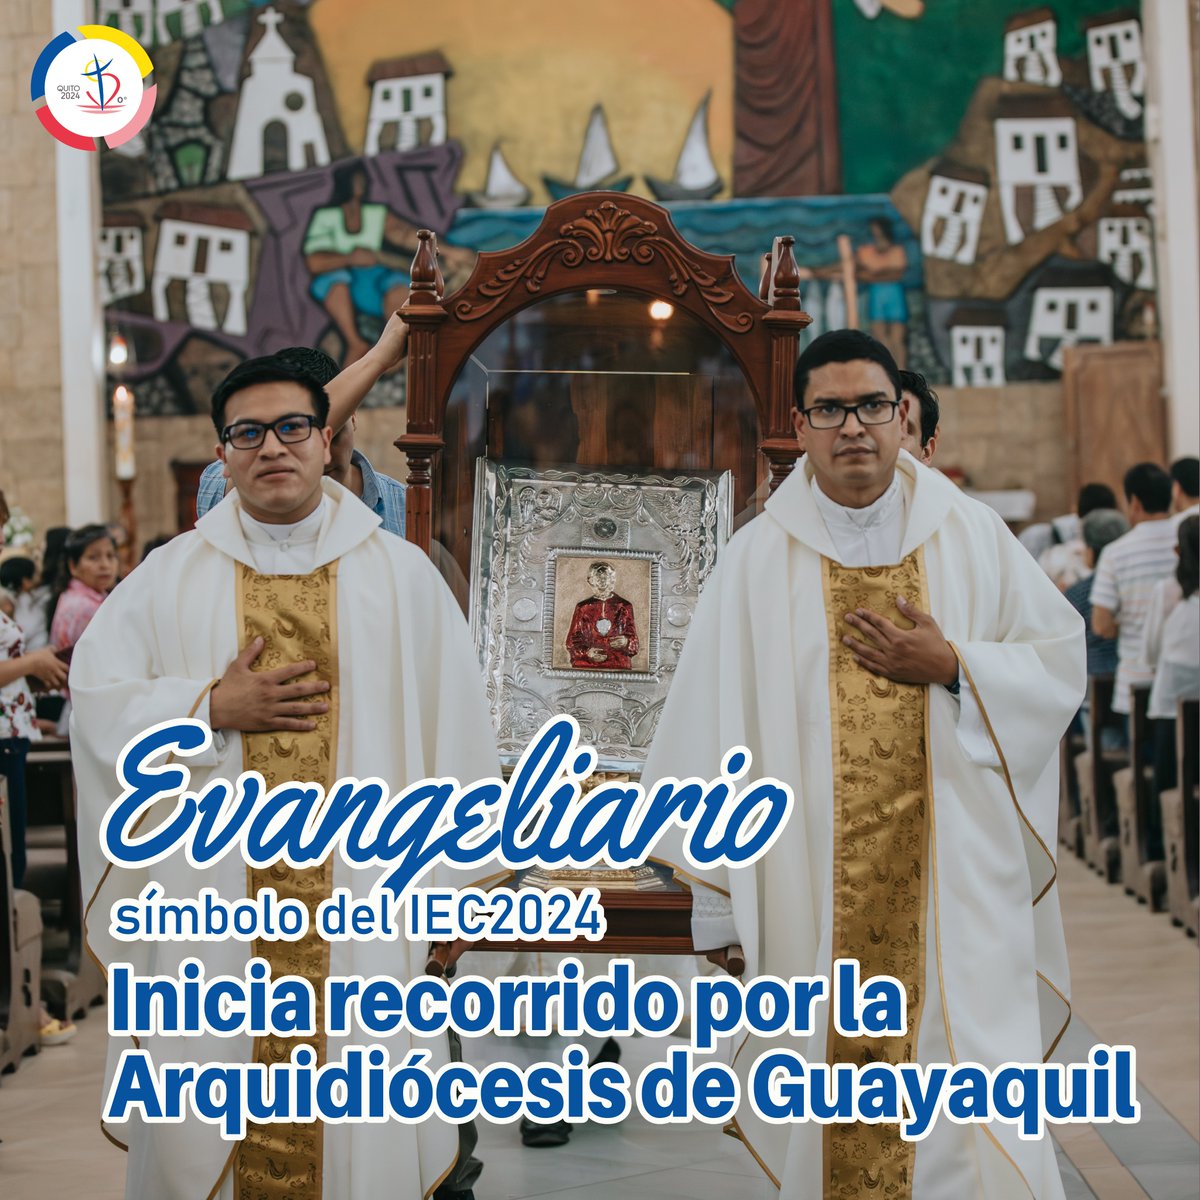 La Arquidiócesis de Guayaquil recibió el Evangeliario de la Diócesis de Santa Elena⛪

El símbolo del #IEC2024📖✝️ inicia su recorrido en la Parroquia Santuario Nuestra Señora de la Alborada.

#EvangeliarioIEC2024 #Guayaquil